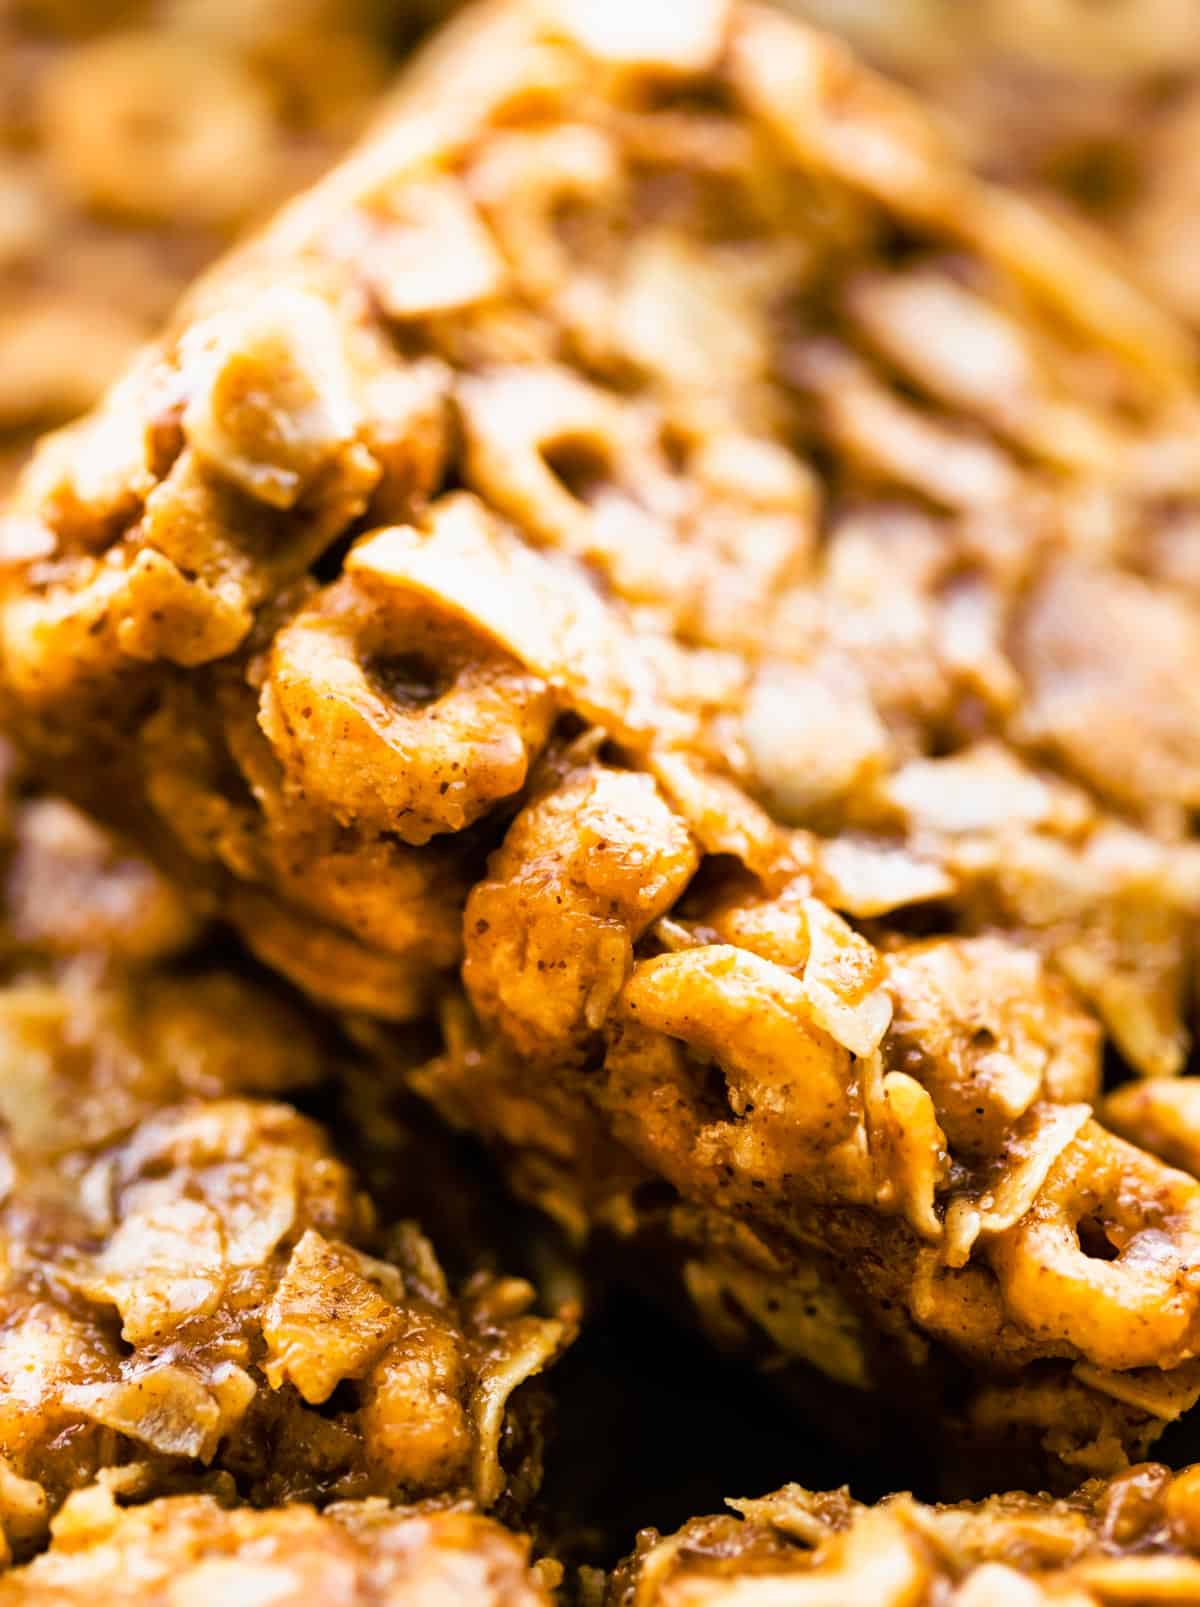 Up close shot of a gluten free no bake cereal bar.